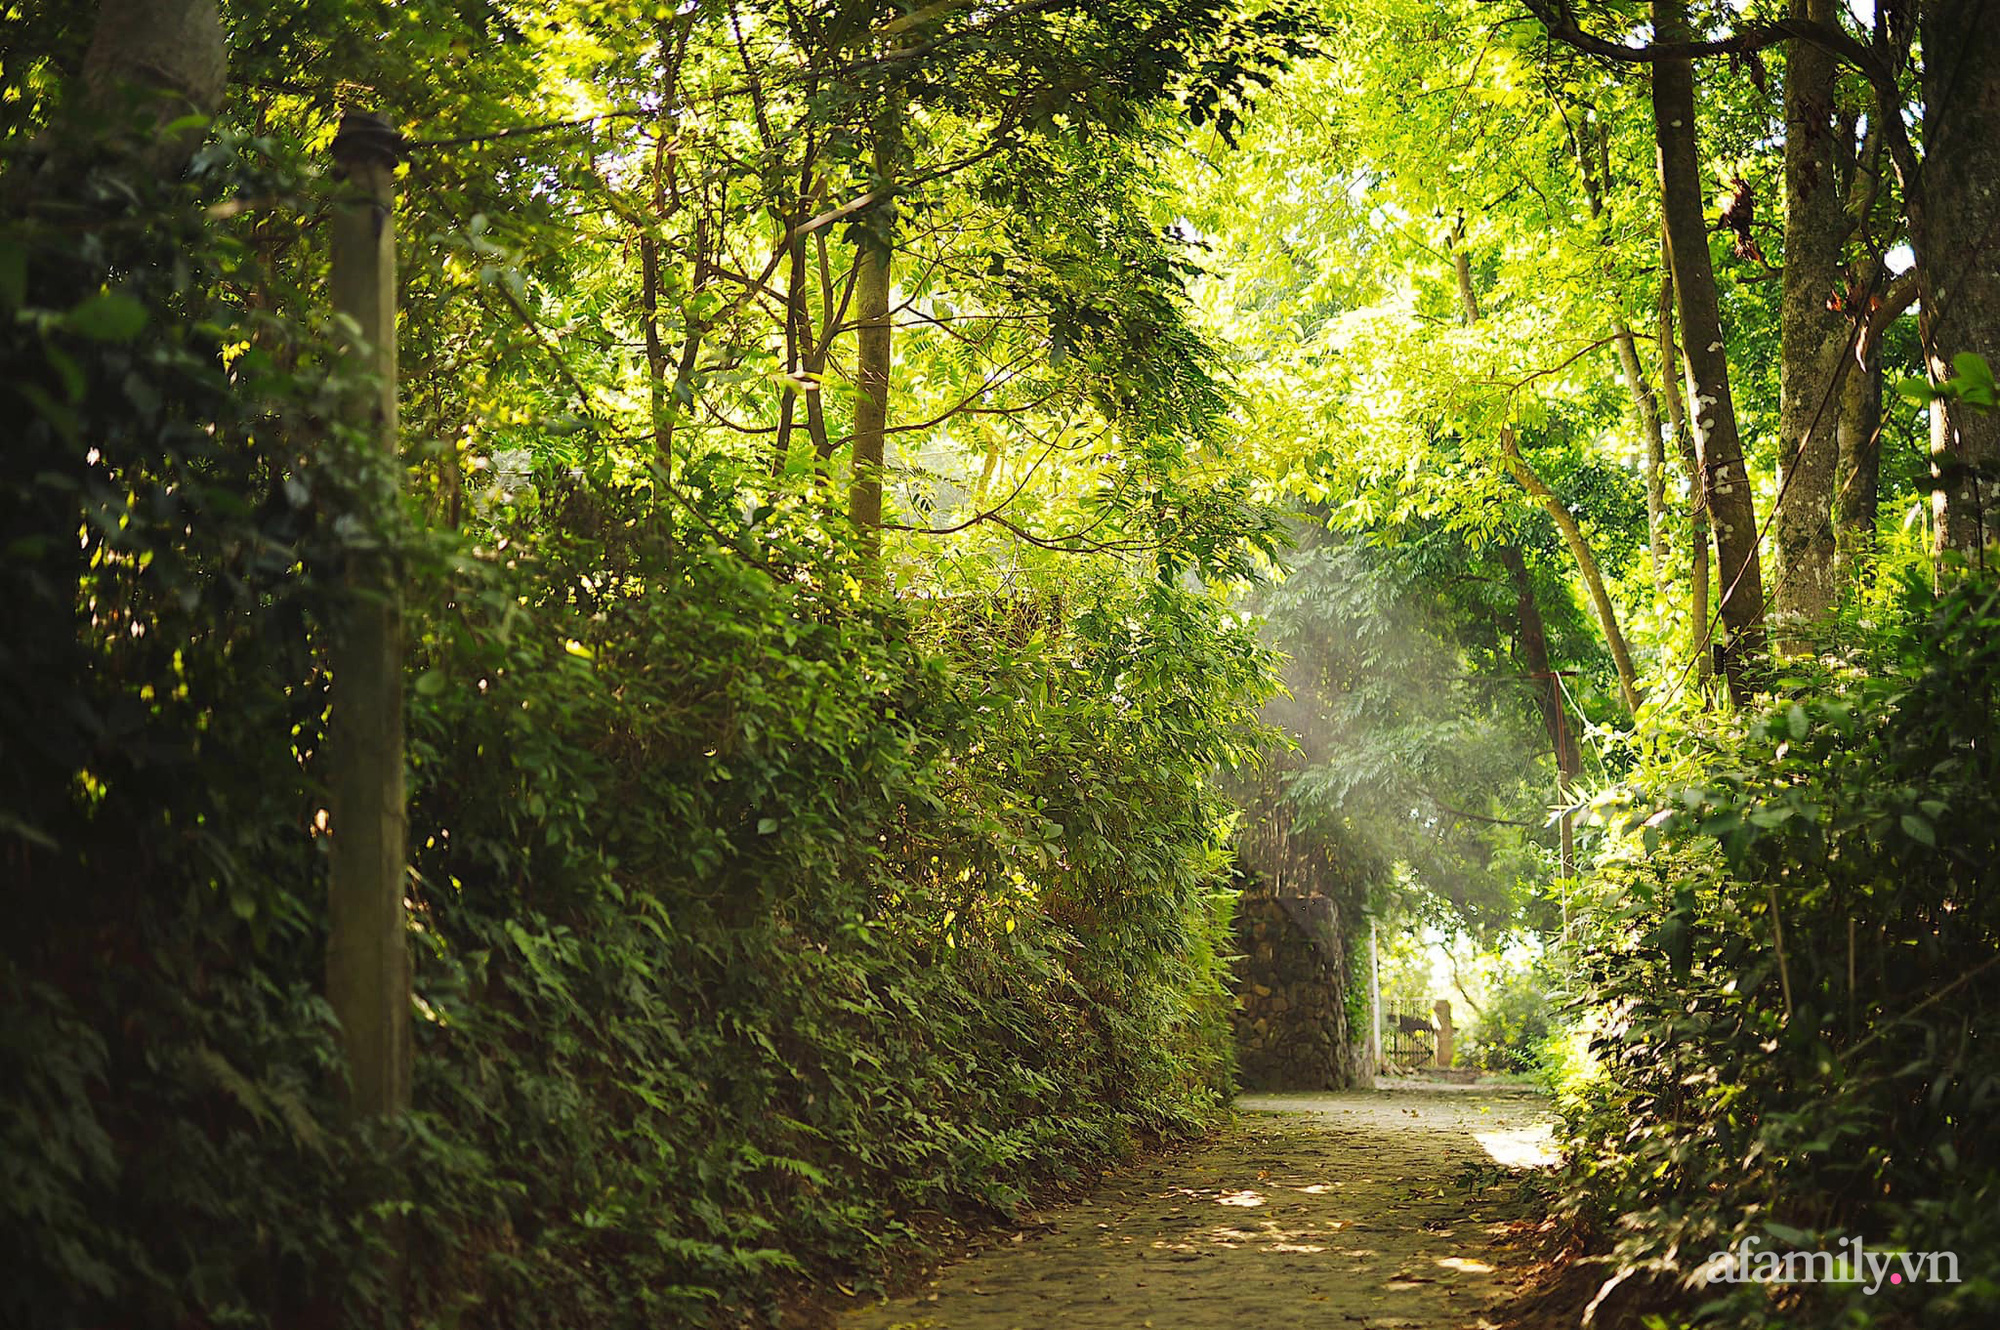 Cuộc sống yên bình trong ngôi nhà nhỏ cùng khu vườn xanh mát bóng cây ở ngoại thành Hà Nội - Ảnh 6.